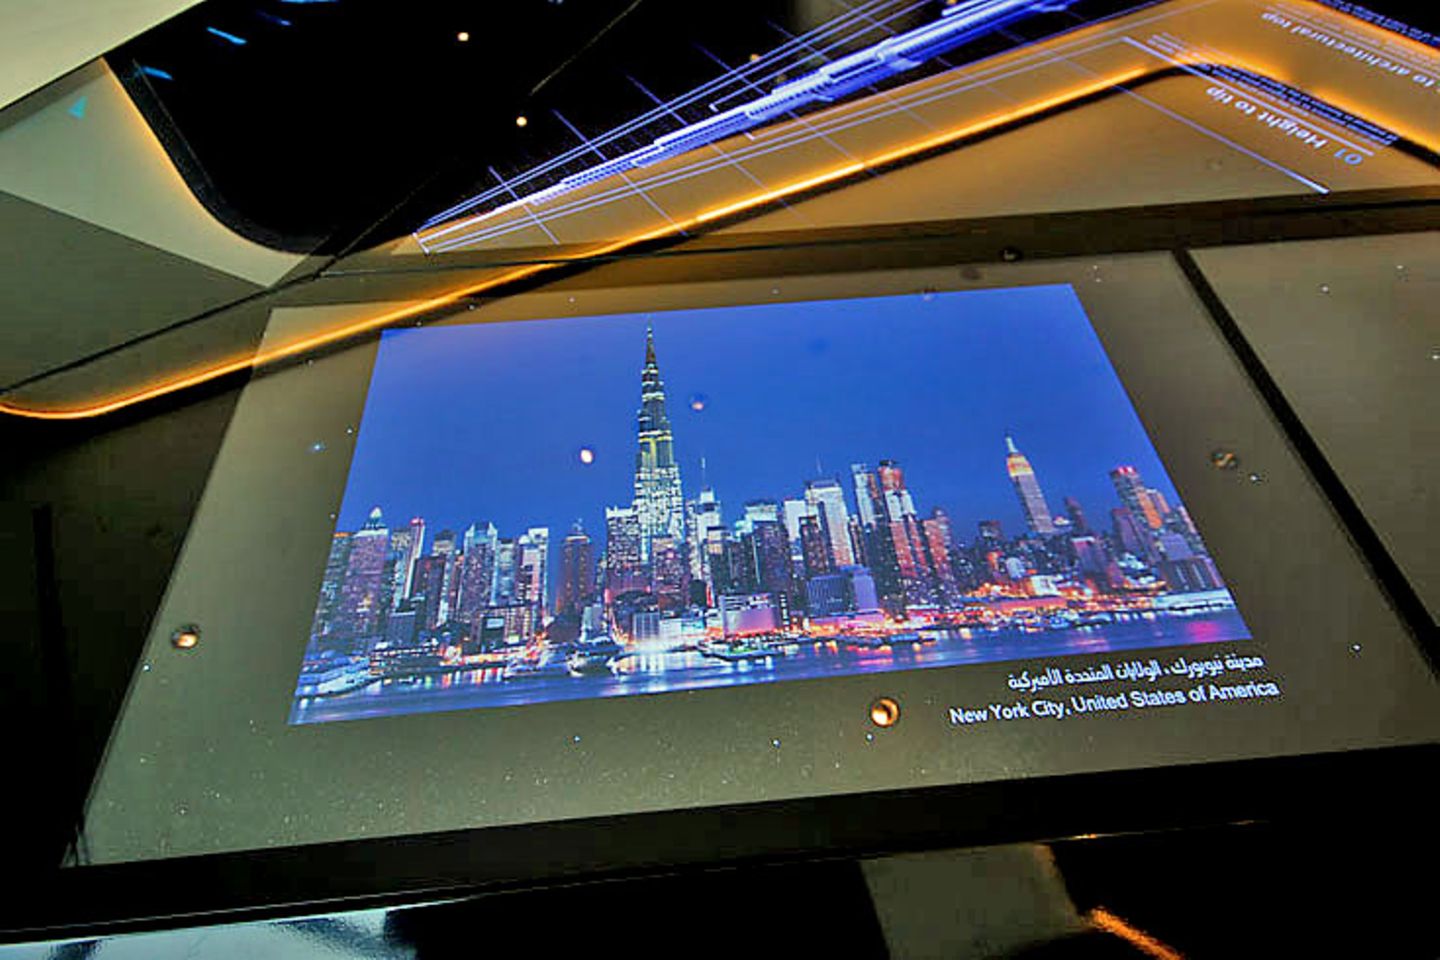 Wer sich im Voraus ein Ticket für die Besucherplattform im Internet gesichert hat, läuft auf dem Weg zum Fahrtstuhl an einem interaktiven Display mit Städtebildern vorbei. Per Knopfdruck lässt sich in die Hochhaus-Silhouette von Frankfurt oder New York maßstabsgetreu der Burj Khalifa einfügen. Jeder soll wissen: Dubai hat den größten Wolkenkratzer